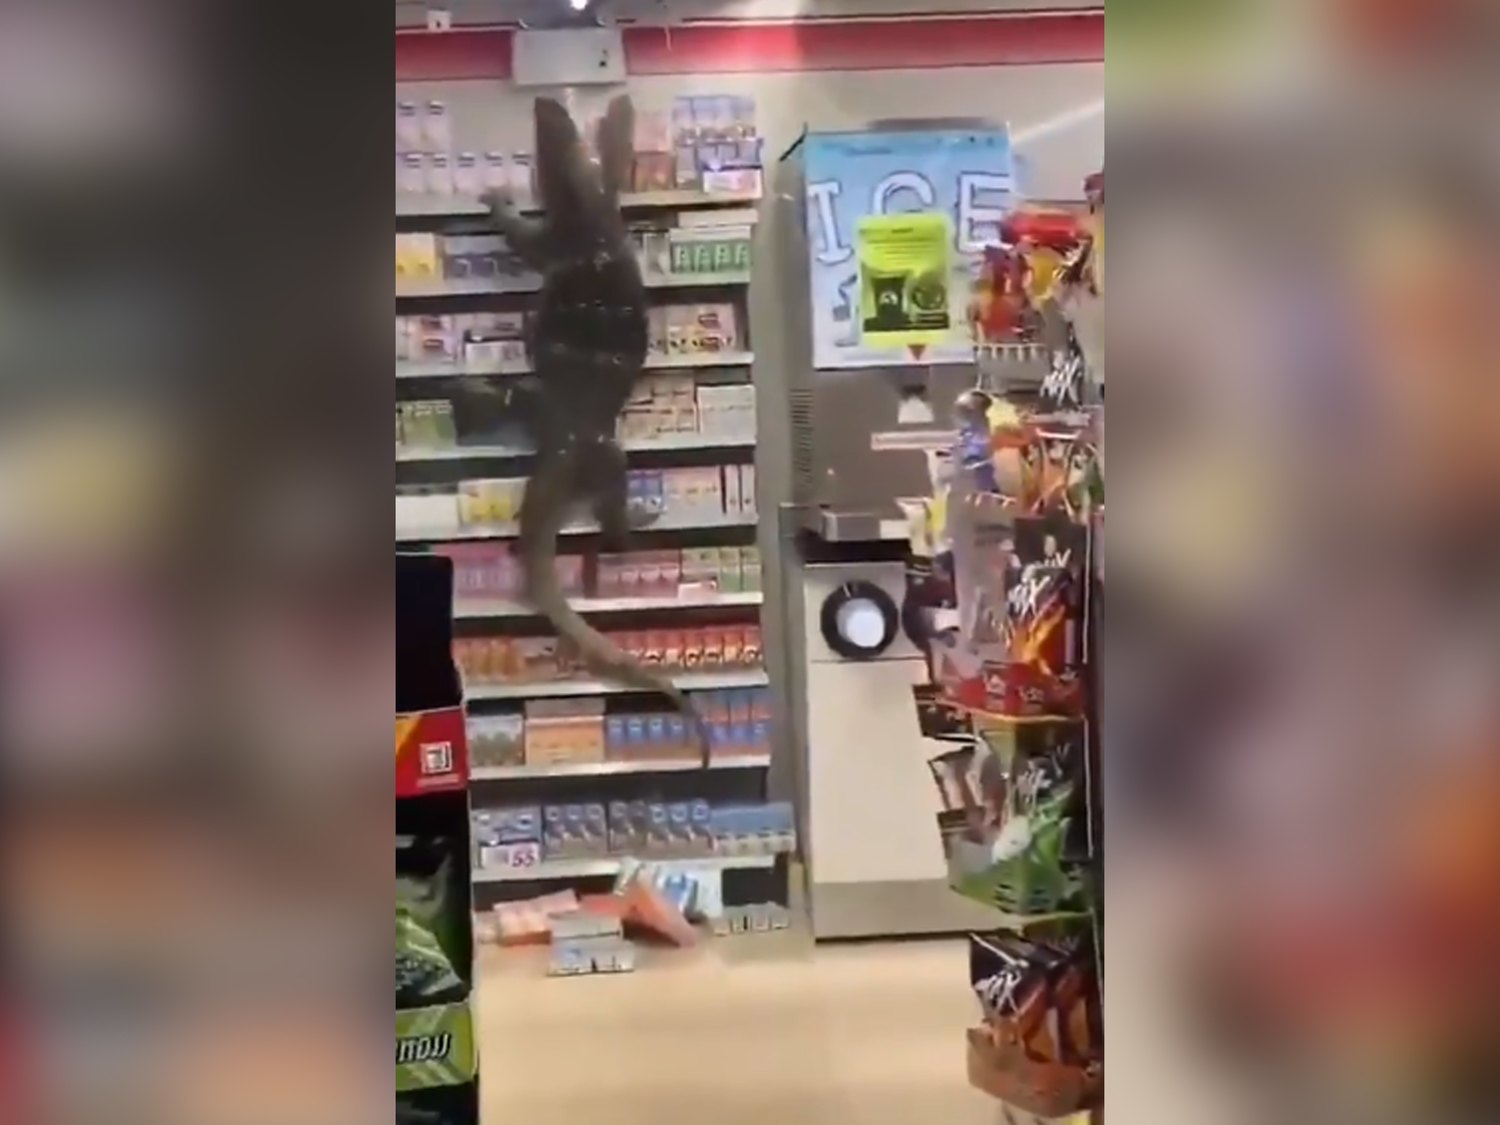 El impactante vídeo del lagarto gigante que se coló en un supermercado de Tailandia